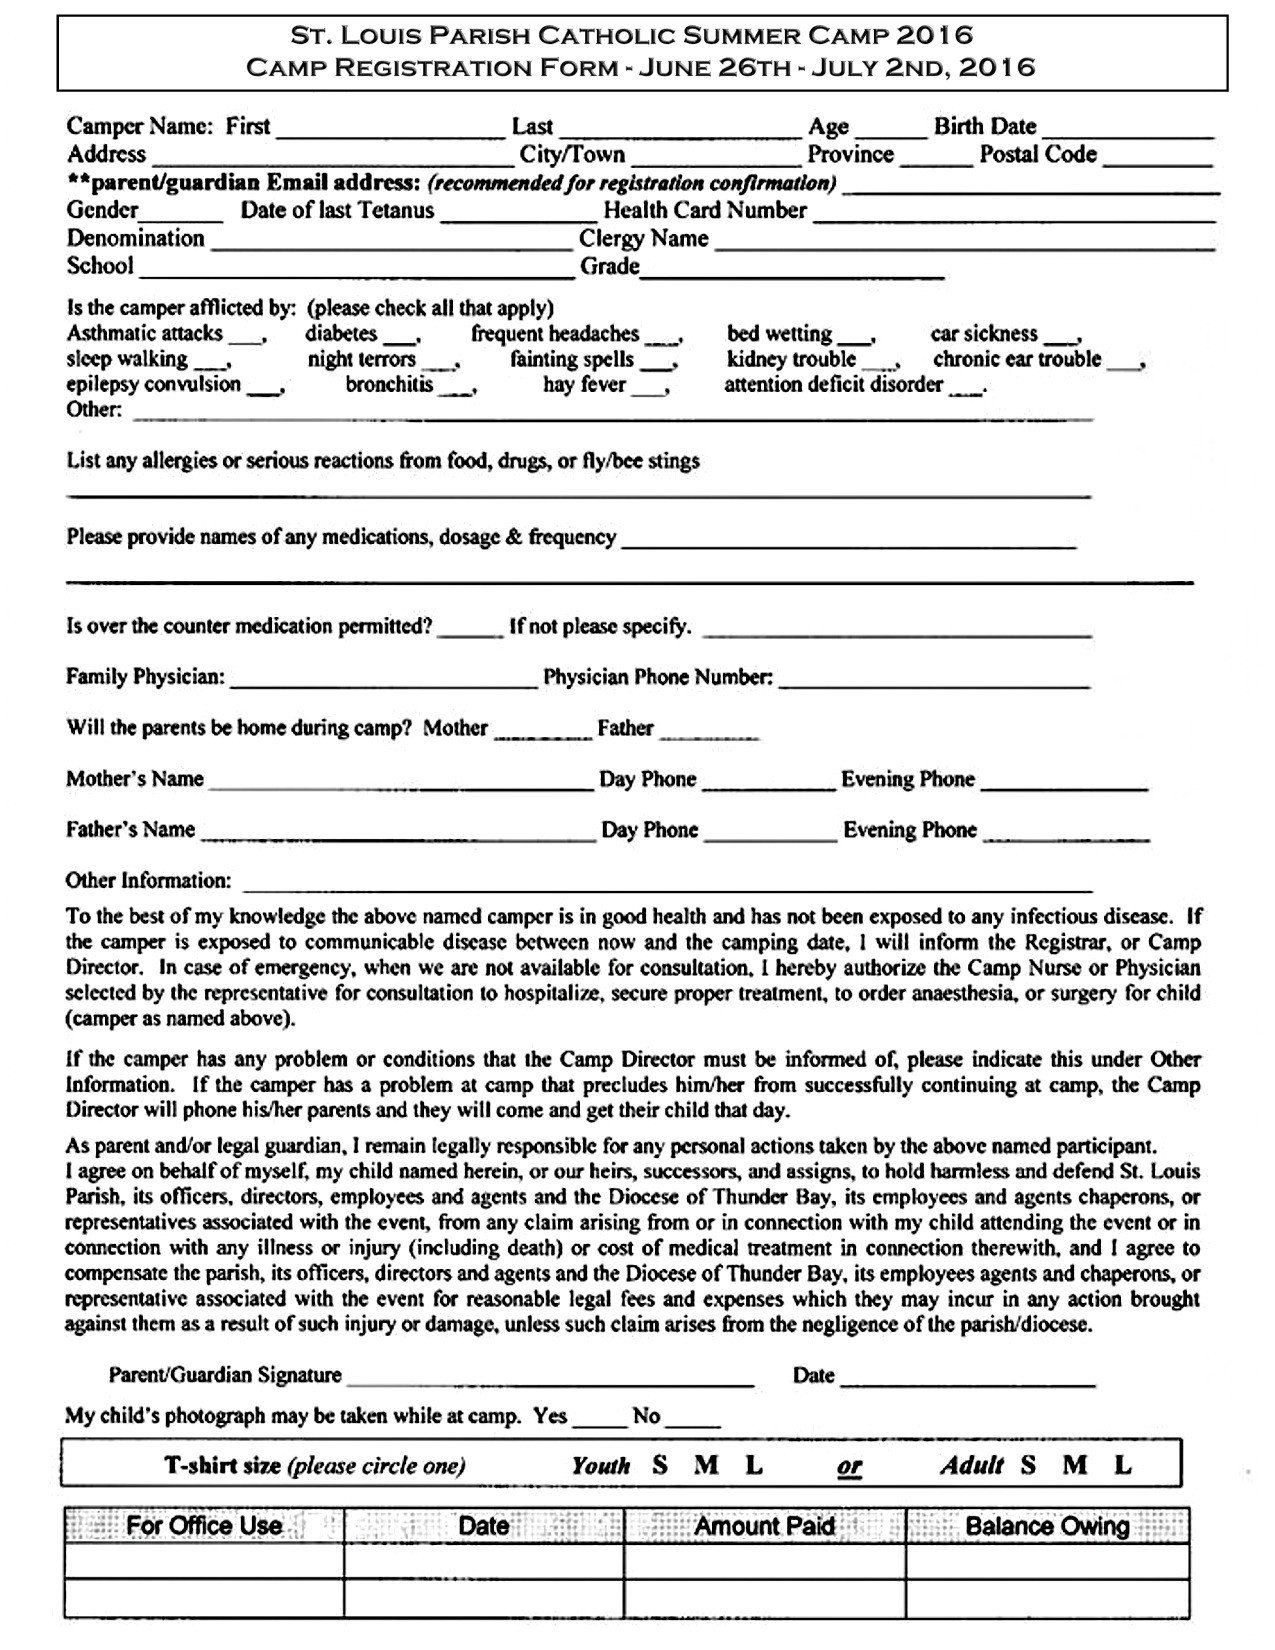 St Louis Summer Camp Registration Form – Saint Louis Church